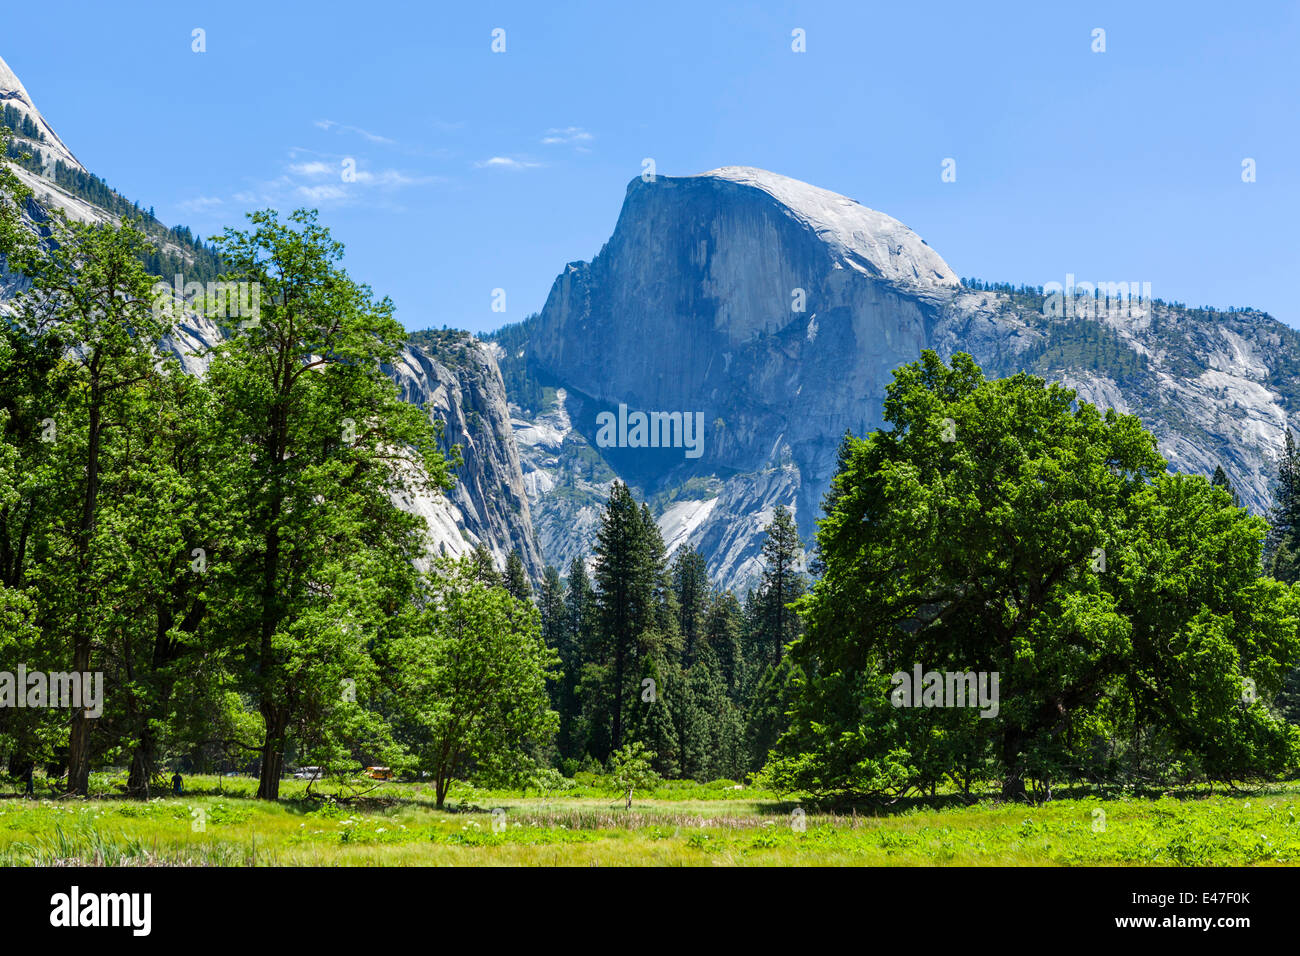 Half Dome, Yosemite Valley, Yosemite National Park, Sierra Nevada, en el norte de California, EE.UU. Foto de stock